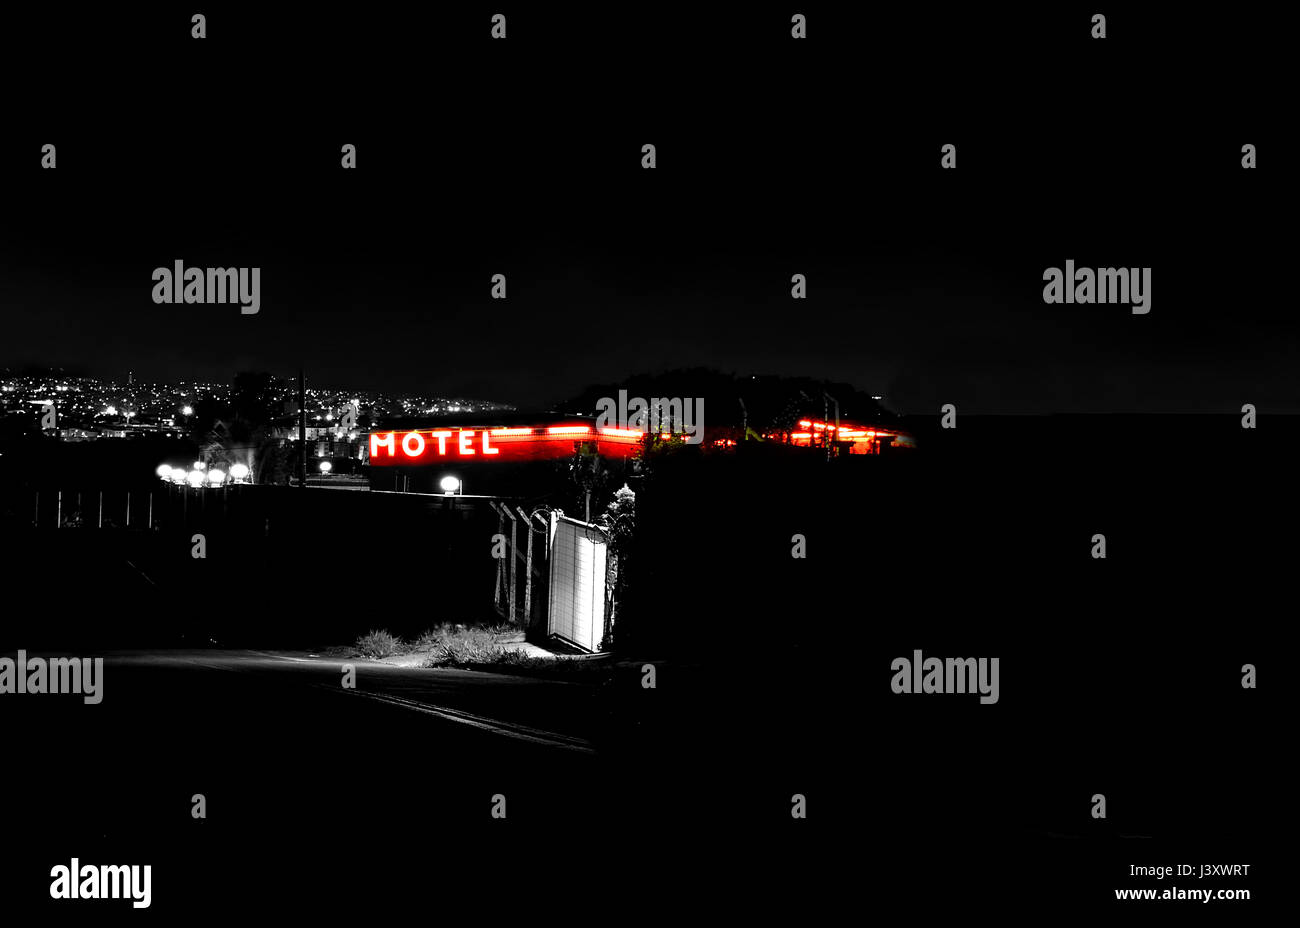 Immagine in bianco e nero di un Motel da una strada secondaria con solo il segno di colore rosso Foto Stock